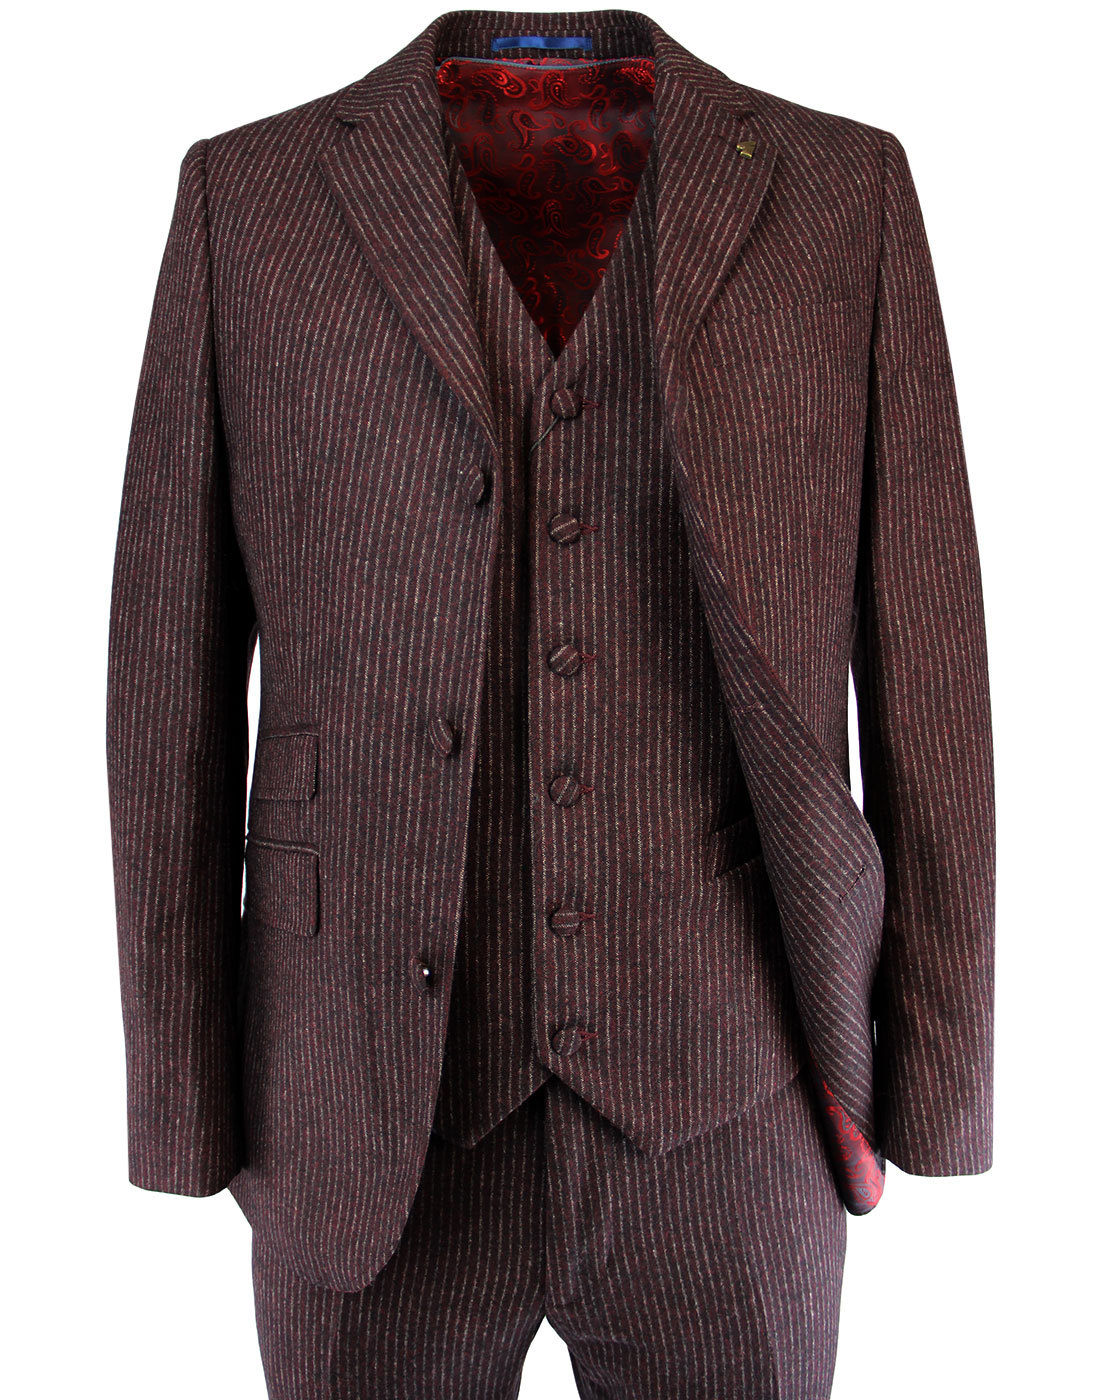 GABICCI VINTAGE 60s Mod Wool Blend 3 Button Pinstripe Suit Jacket